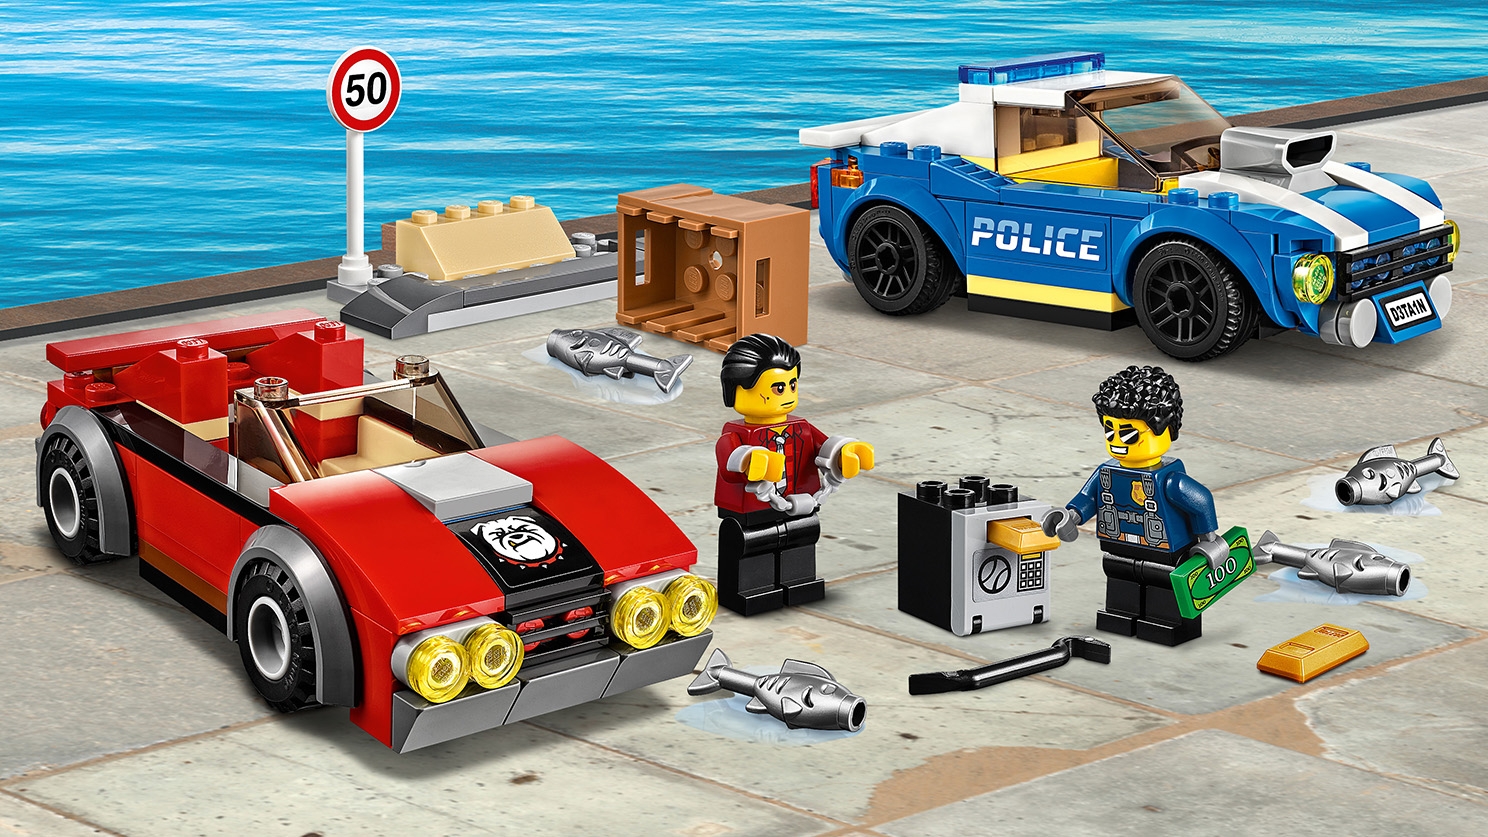 Lego City - Arresto su Strada della Polizia, Set con 2 Macchine Giocattolo  e 2 Minifigure - 60242